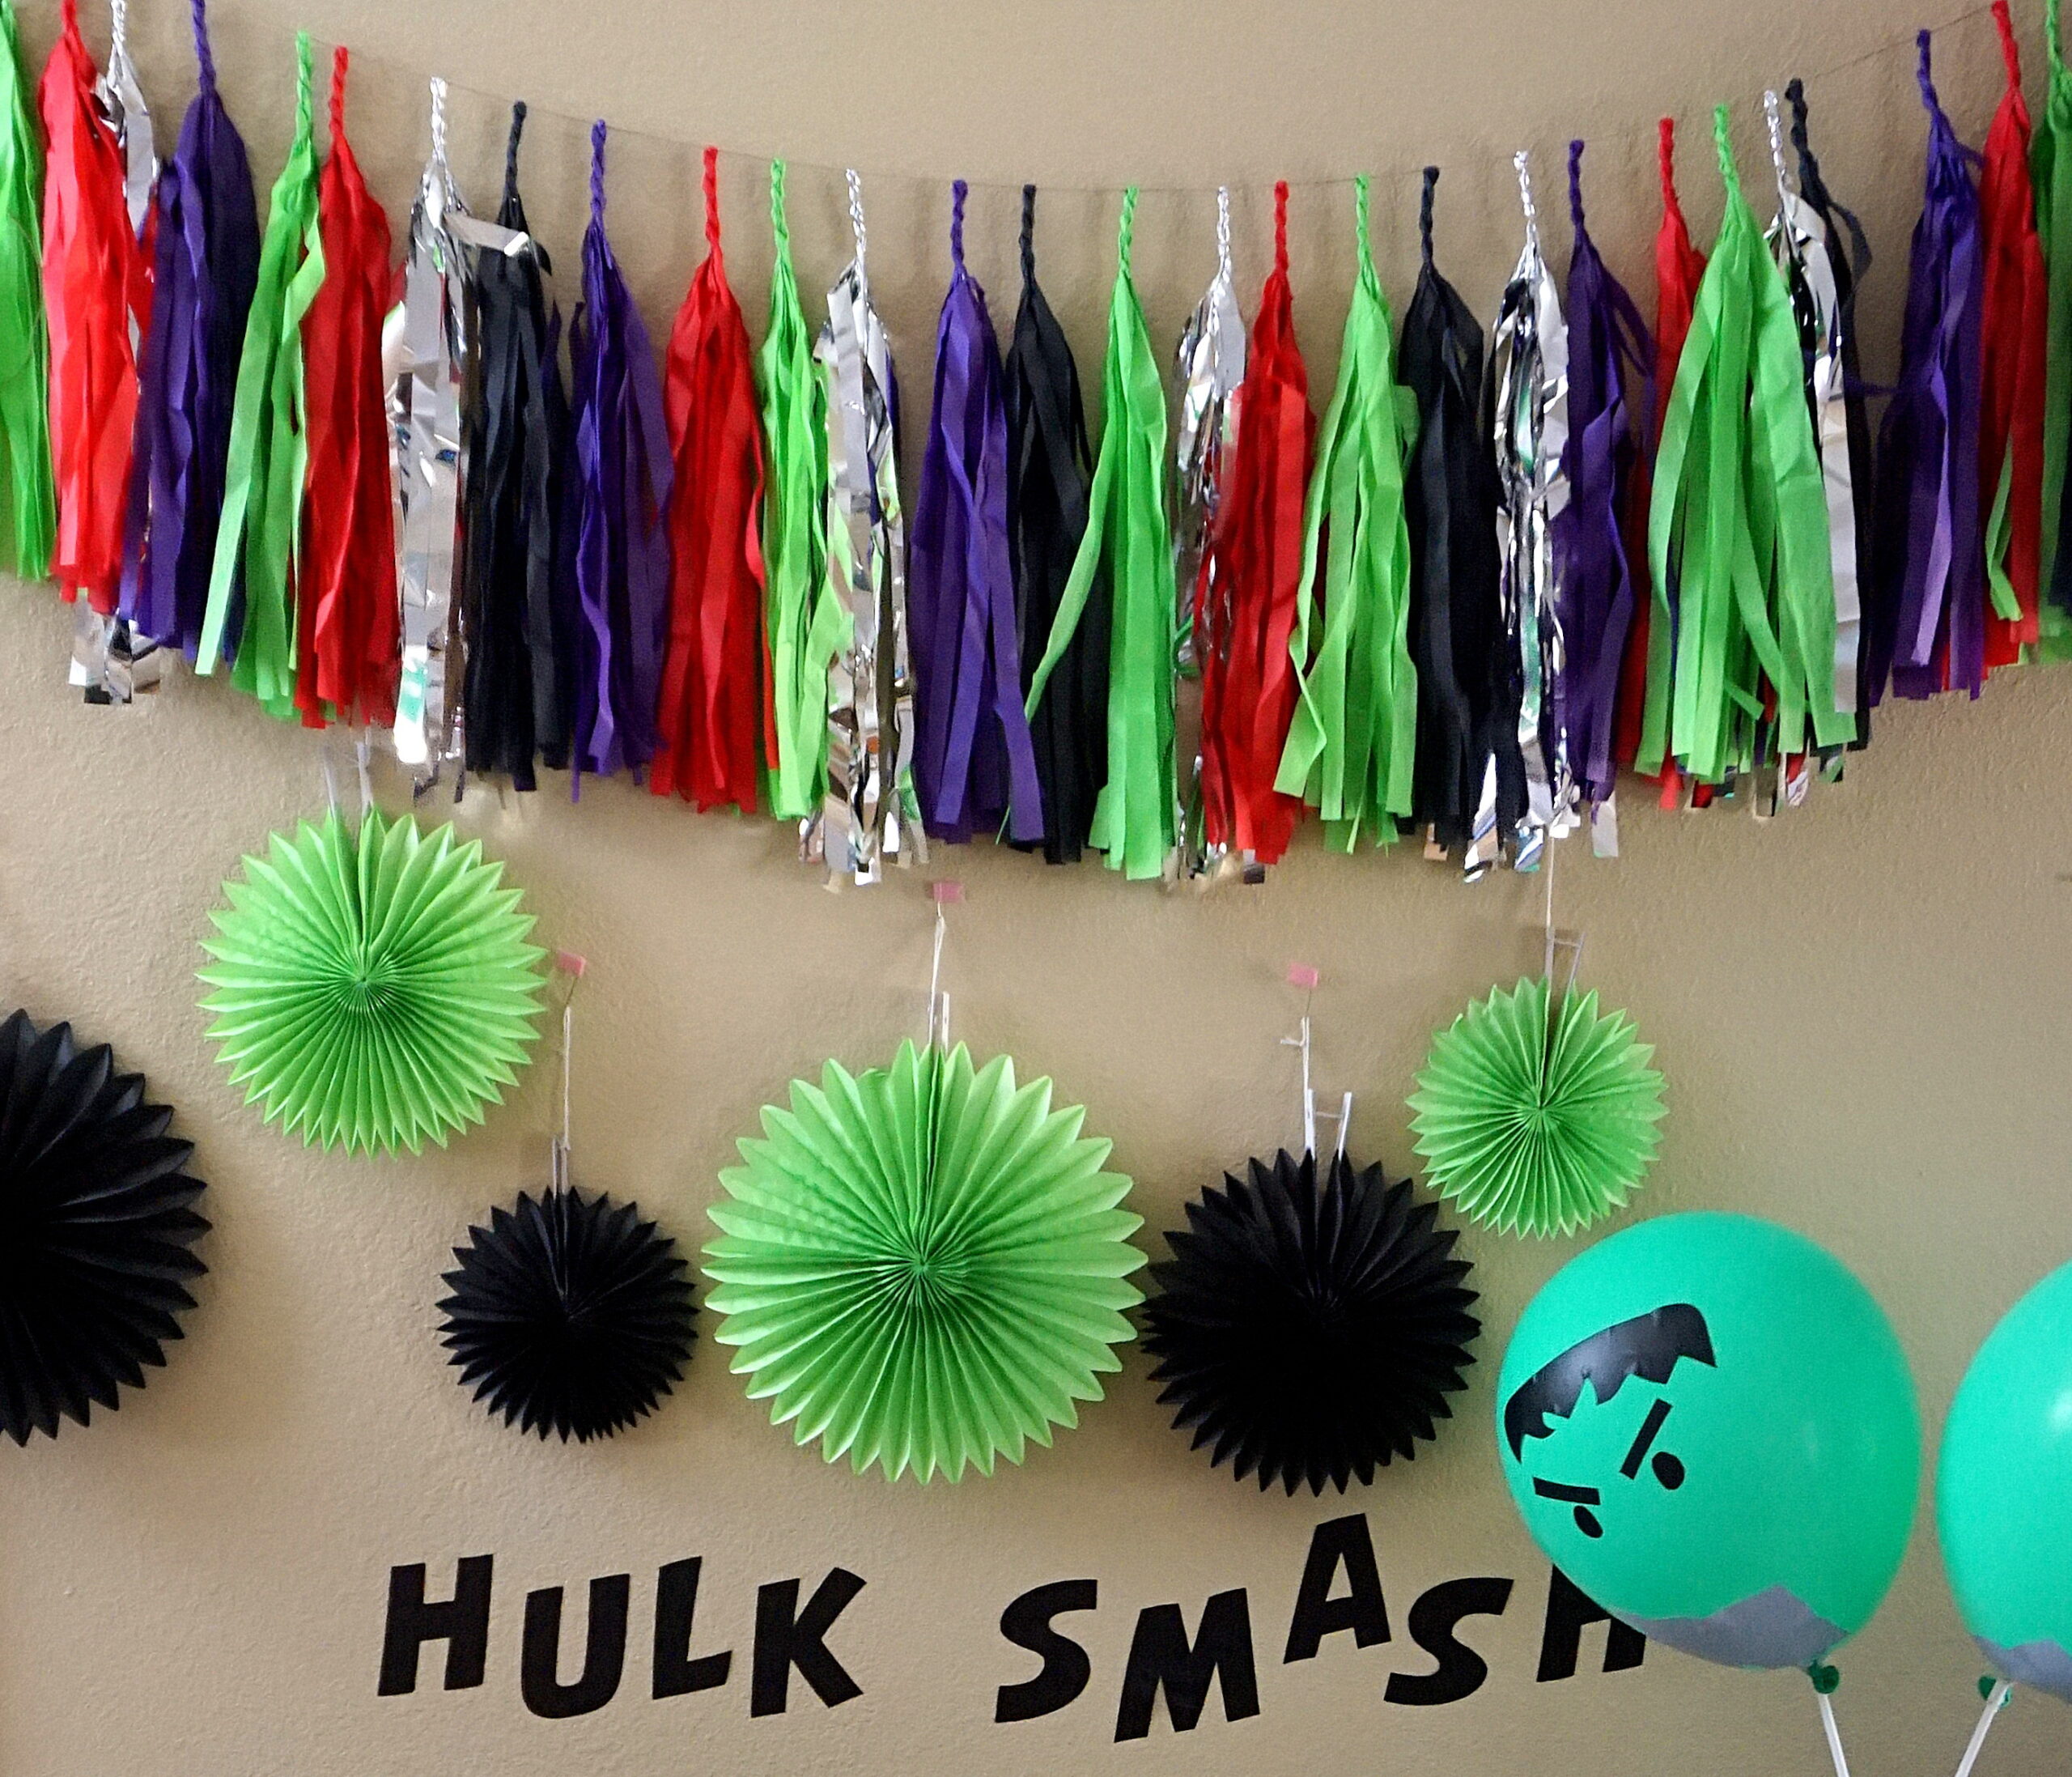 hulk smash edit